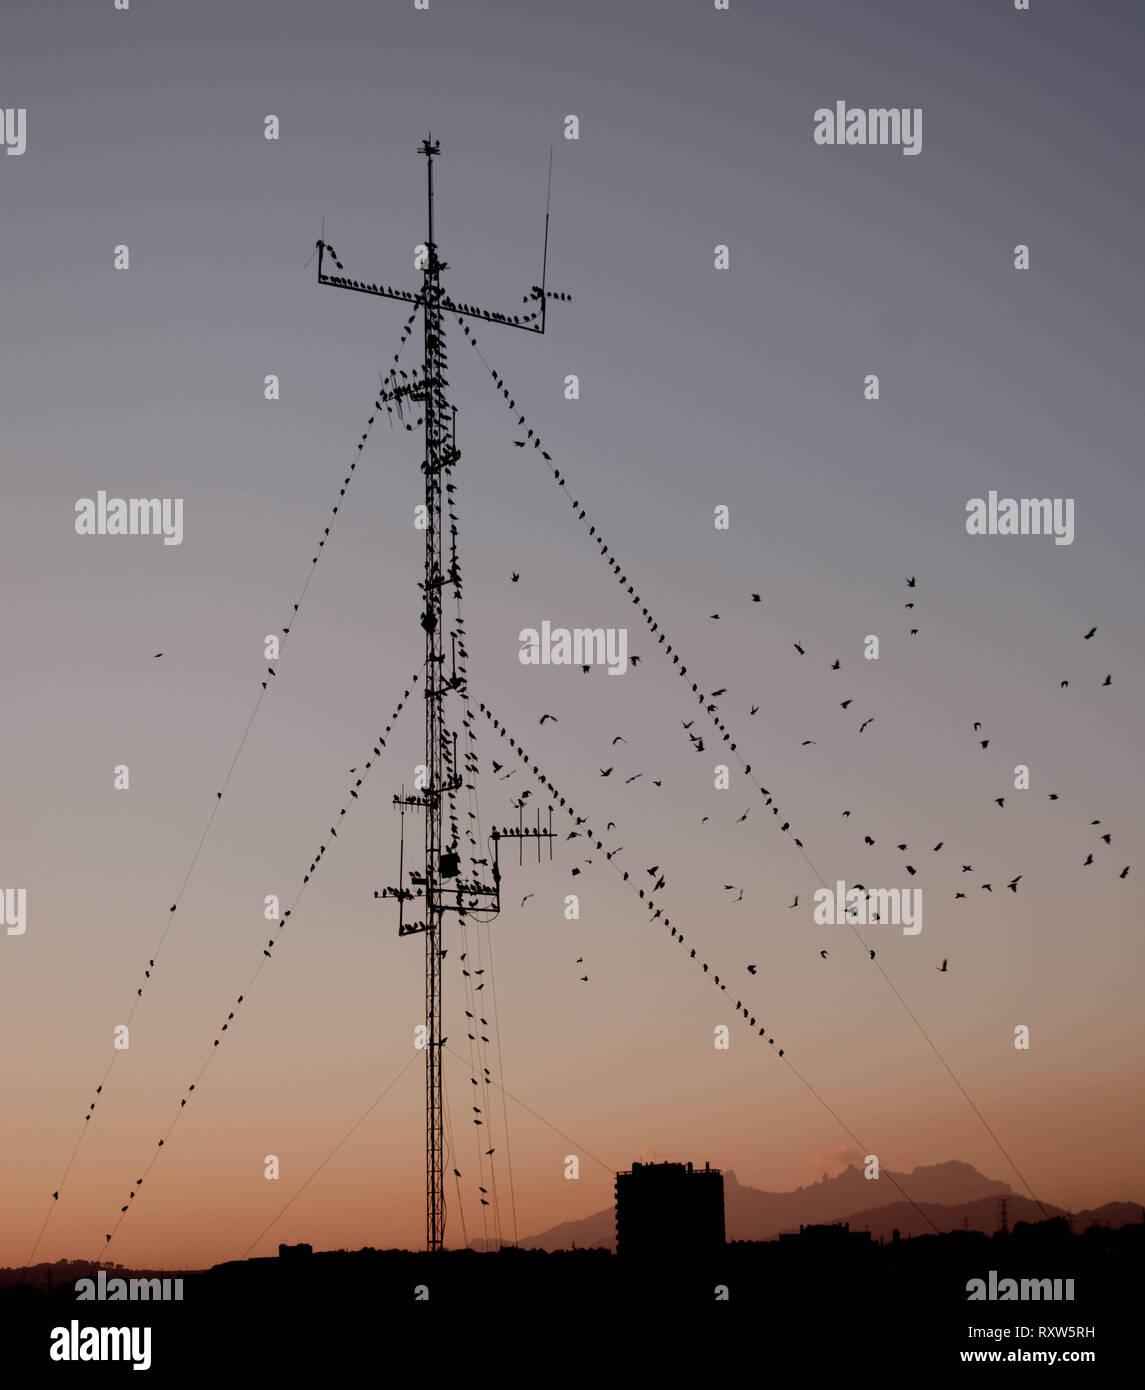 Scharen von Vögeln auf einer Antenne. Schönen Sonnenuntergang Landschaft. Stockfoto